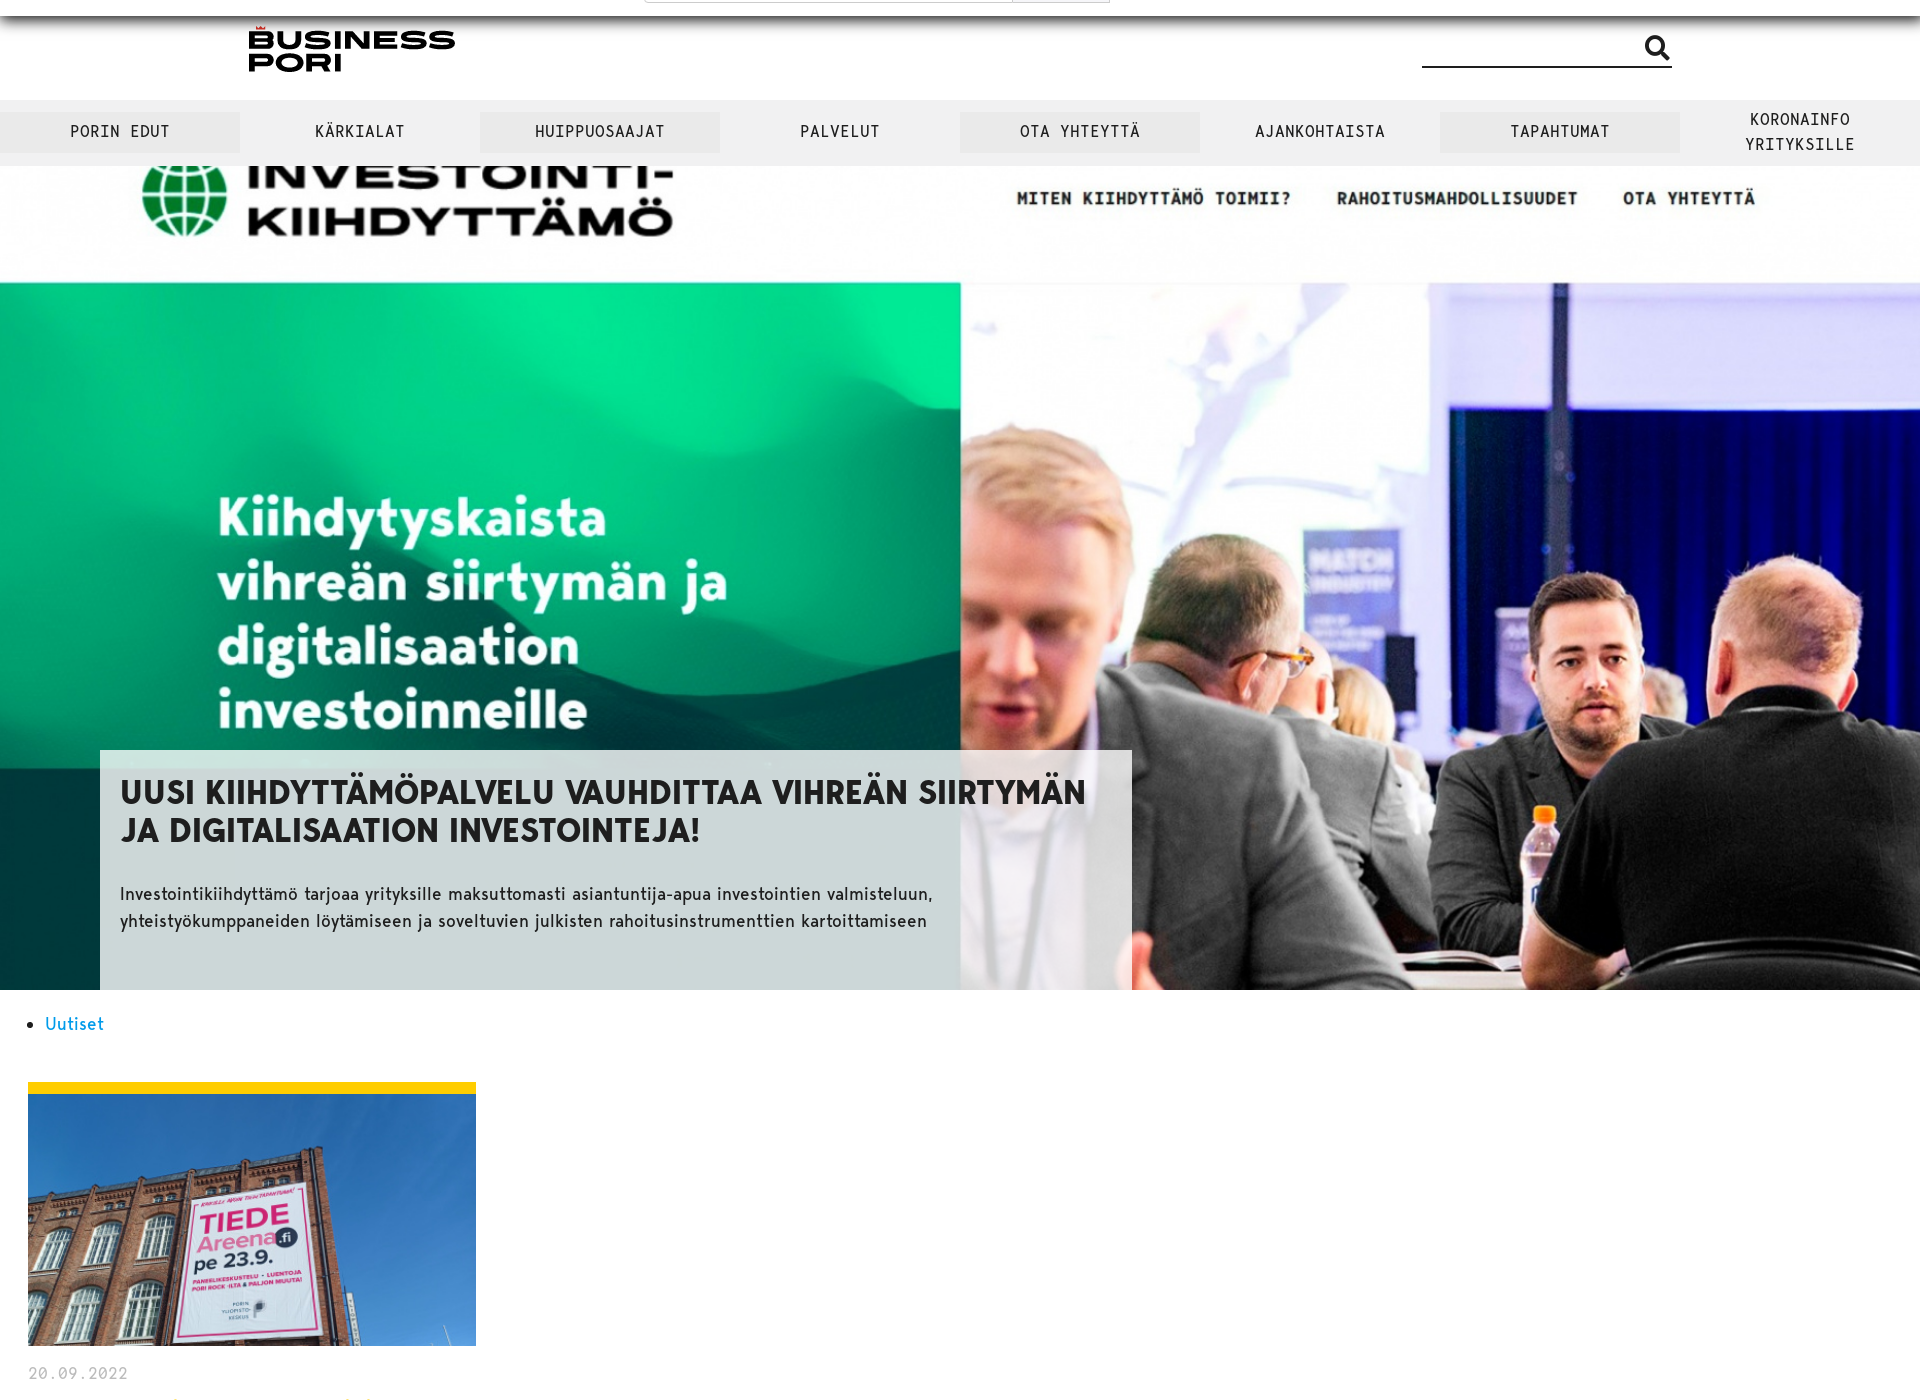 Näyttökuva businesspori.fi